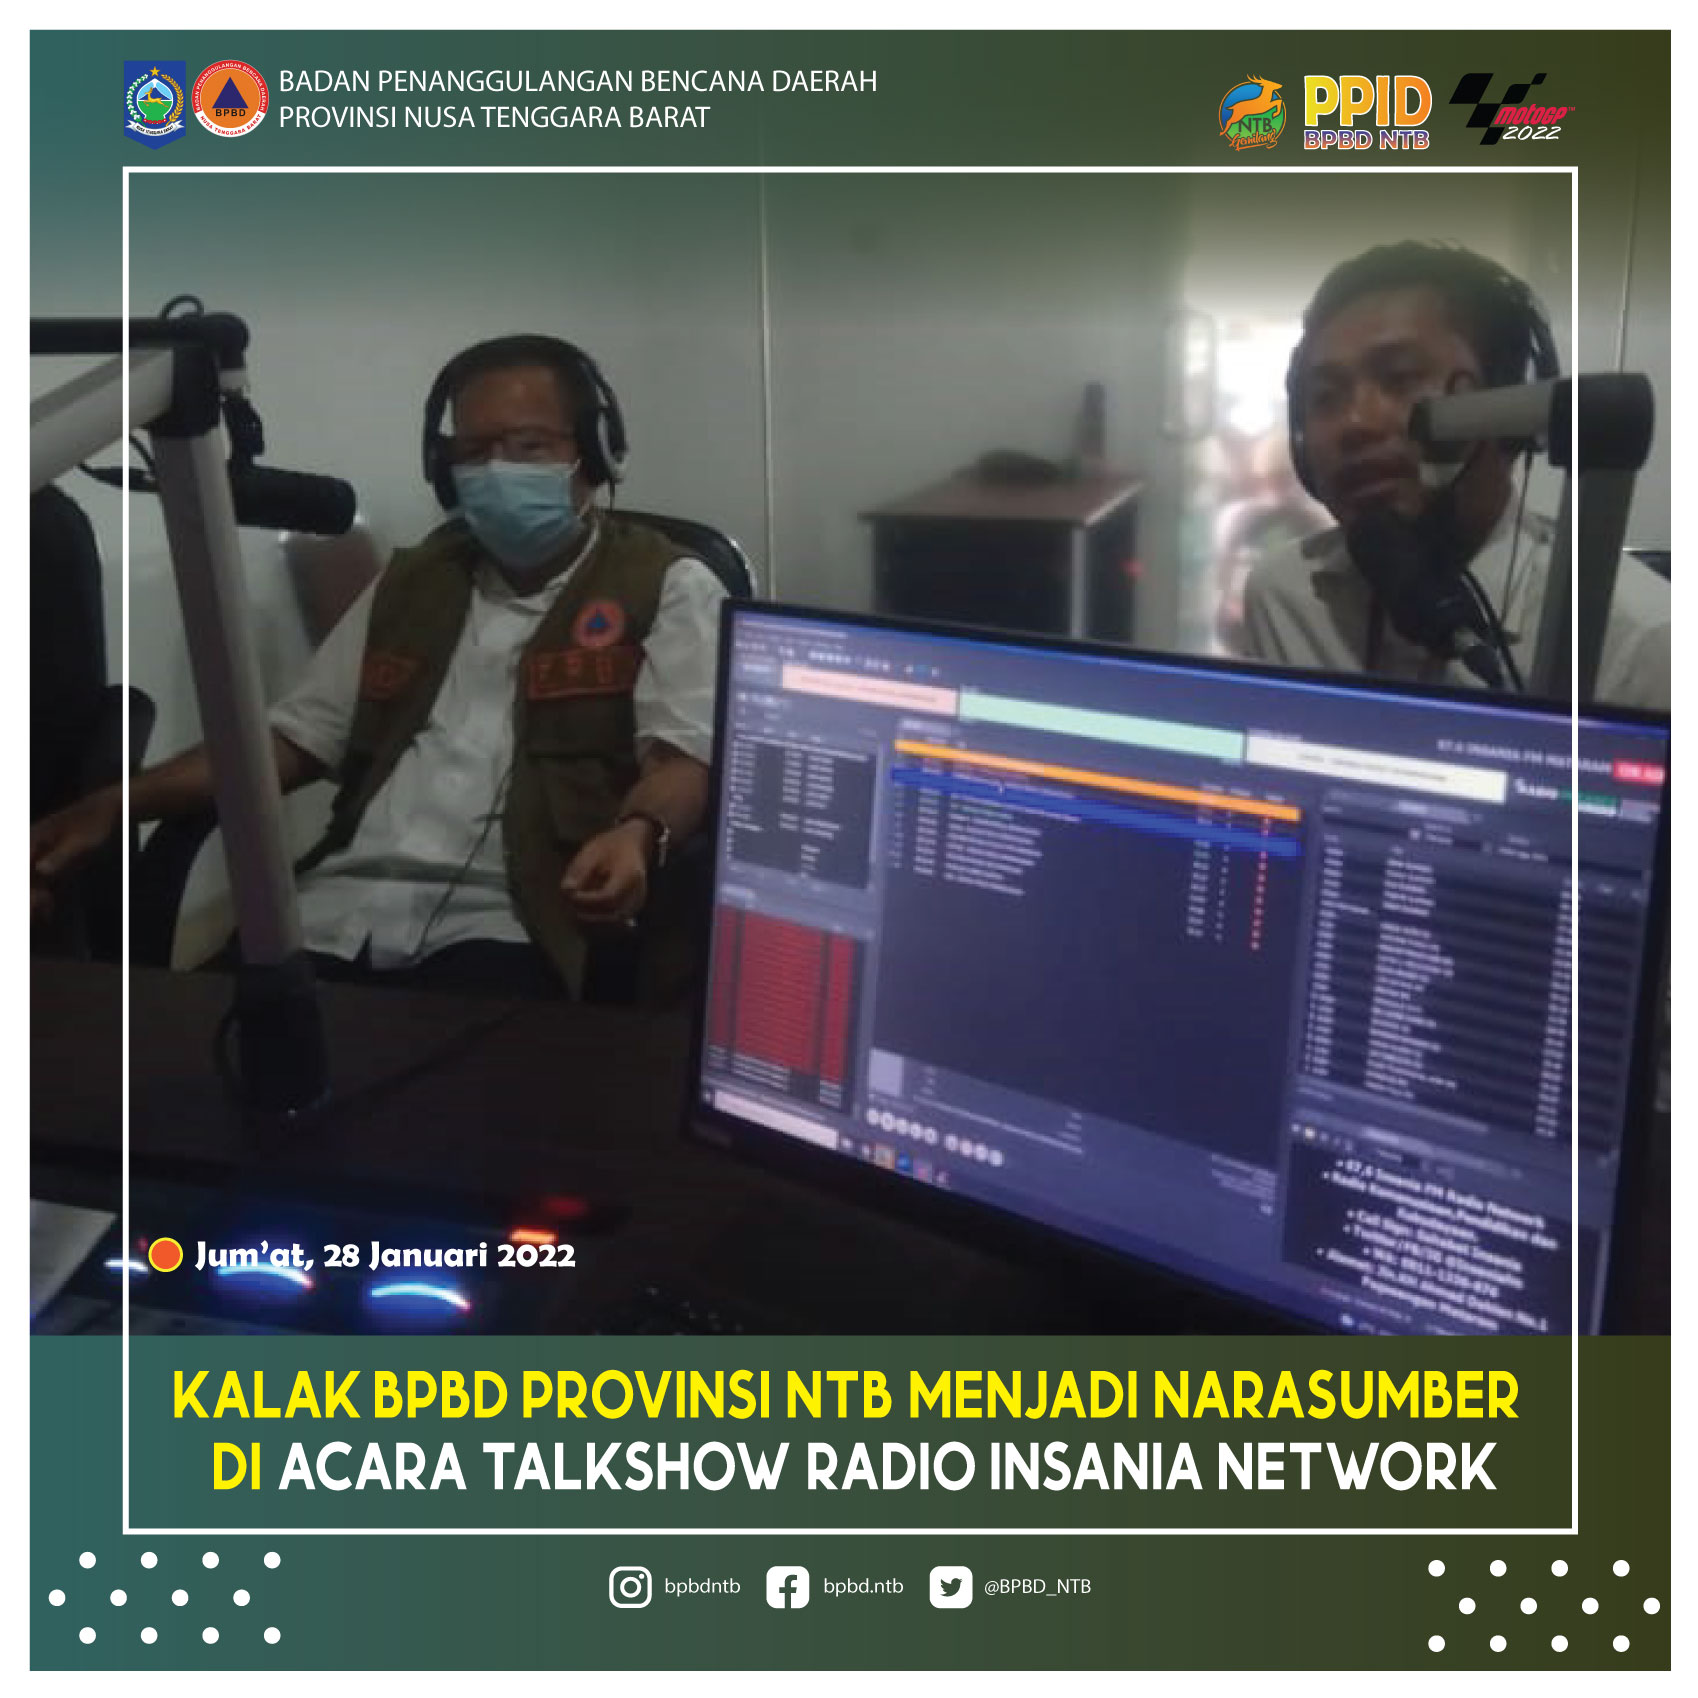 Kalak BPBD Provinsi NTB Menjadi Narasumber di Acara Talkshow Radio Insania Network (Jum'at, 28 Januari 2022)